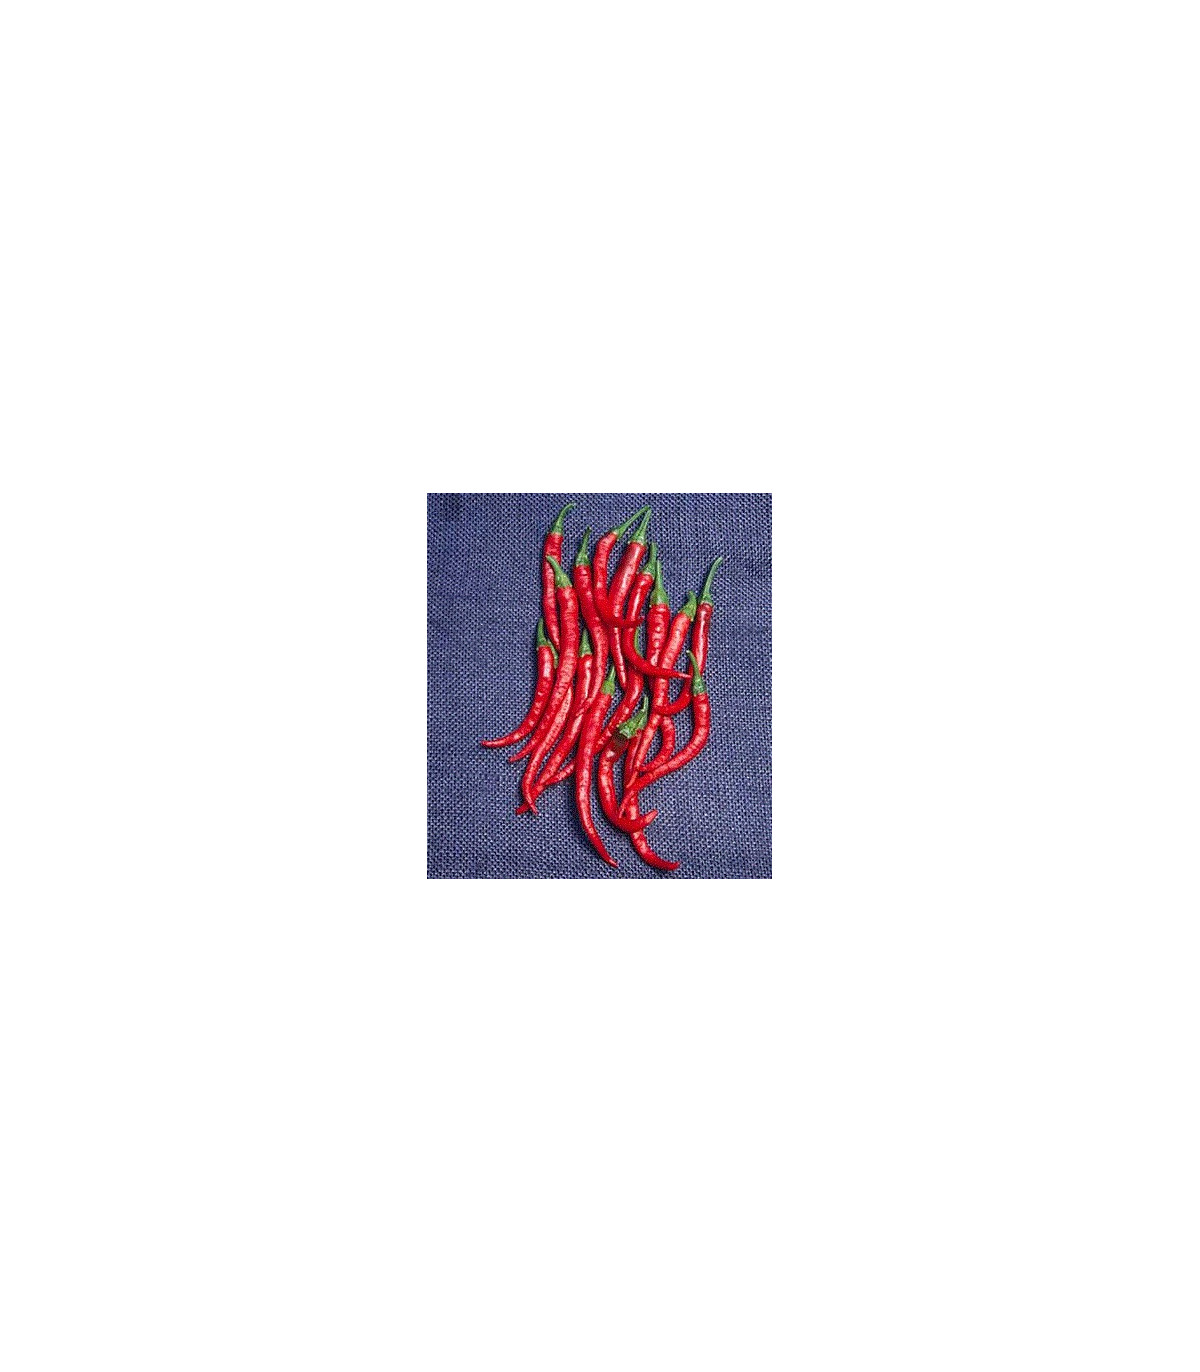 Kajenský pepř - Cayenne pepper - EXTRA dlouhý - 6 ks